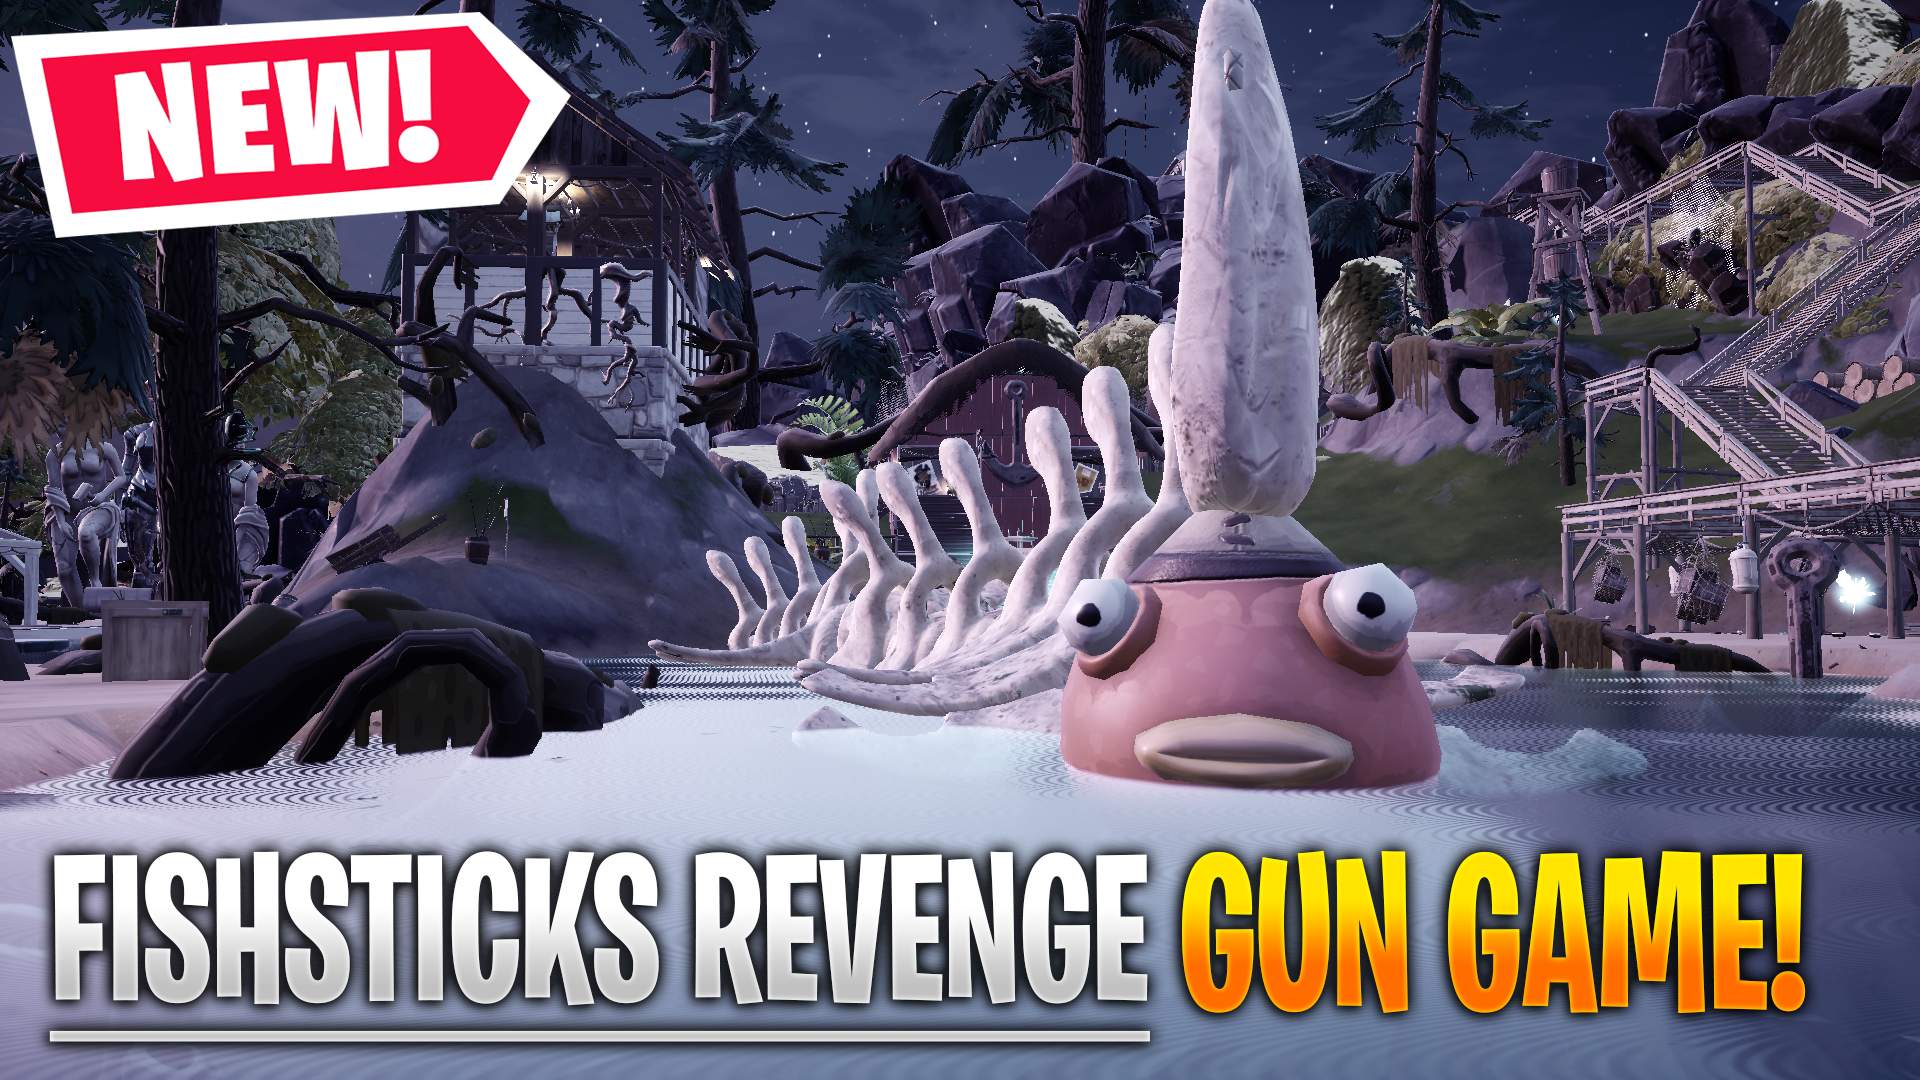 FISHSTICKS REVENGE GUN GAME!